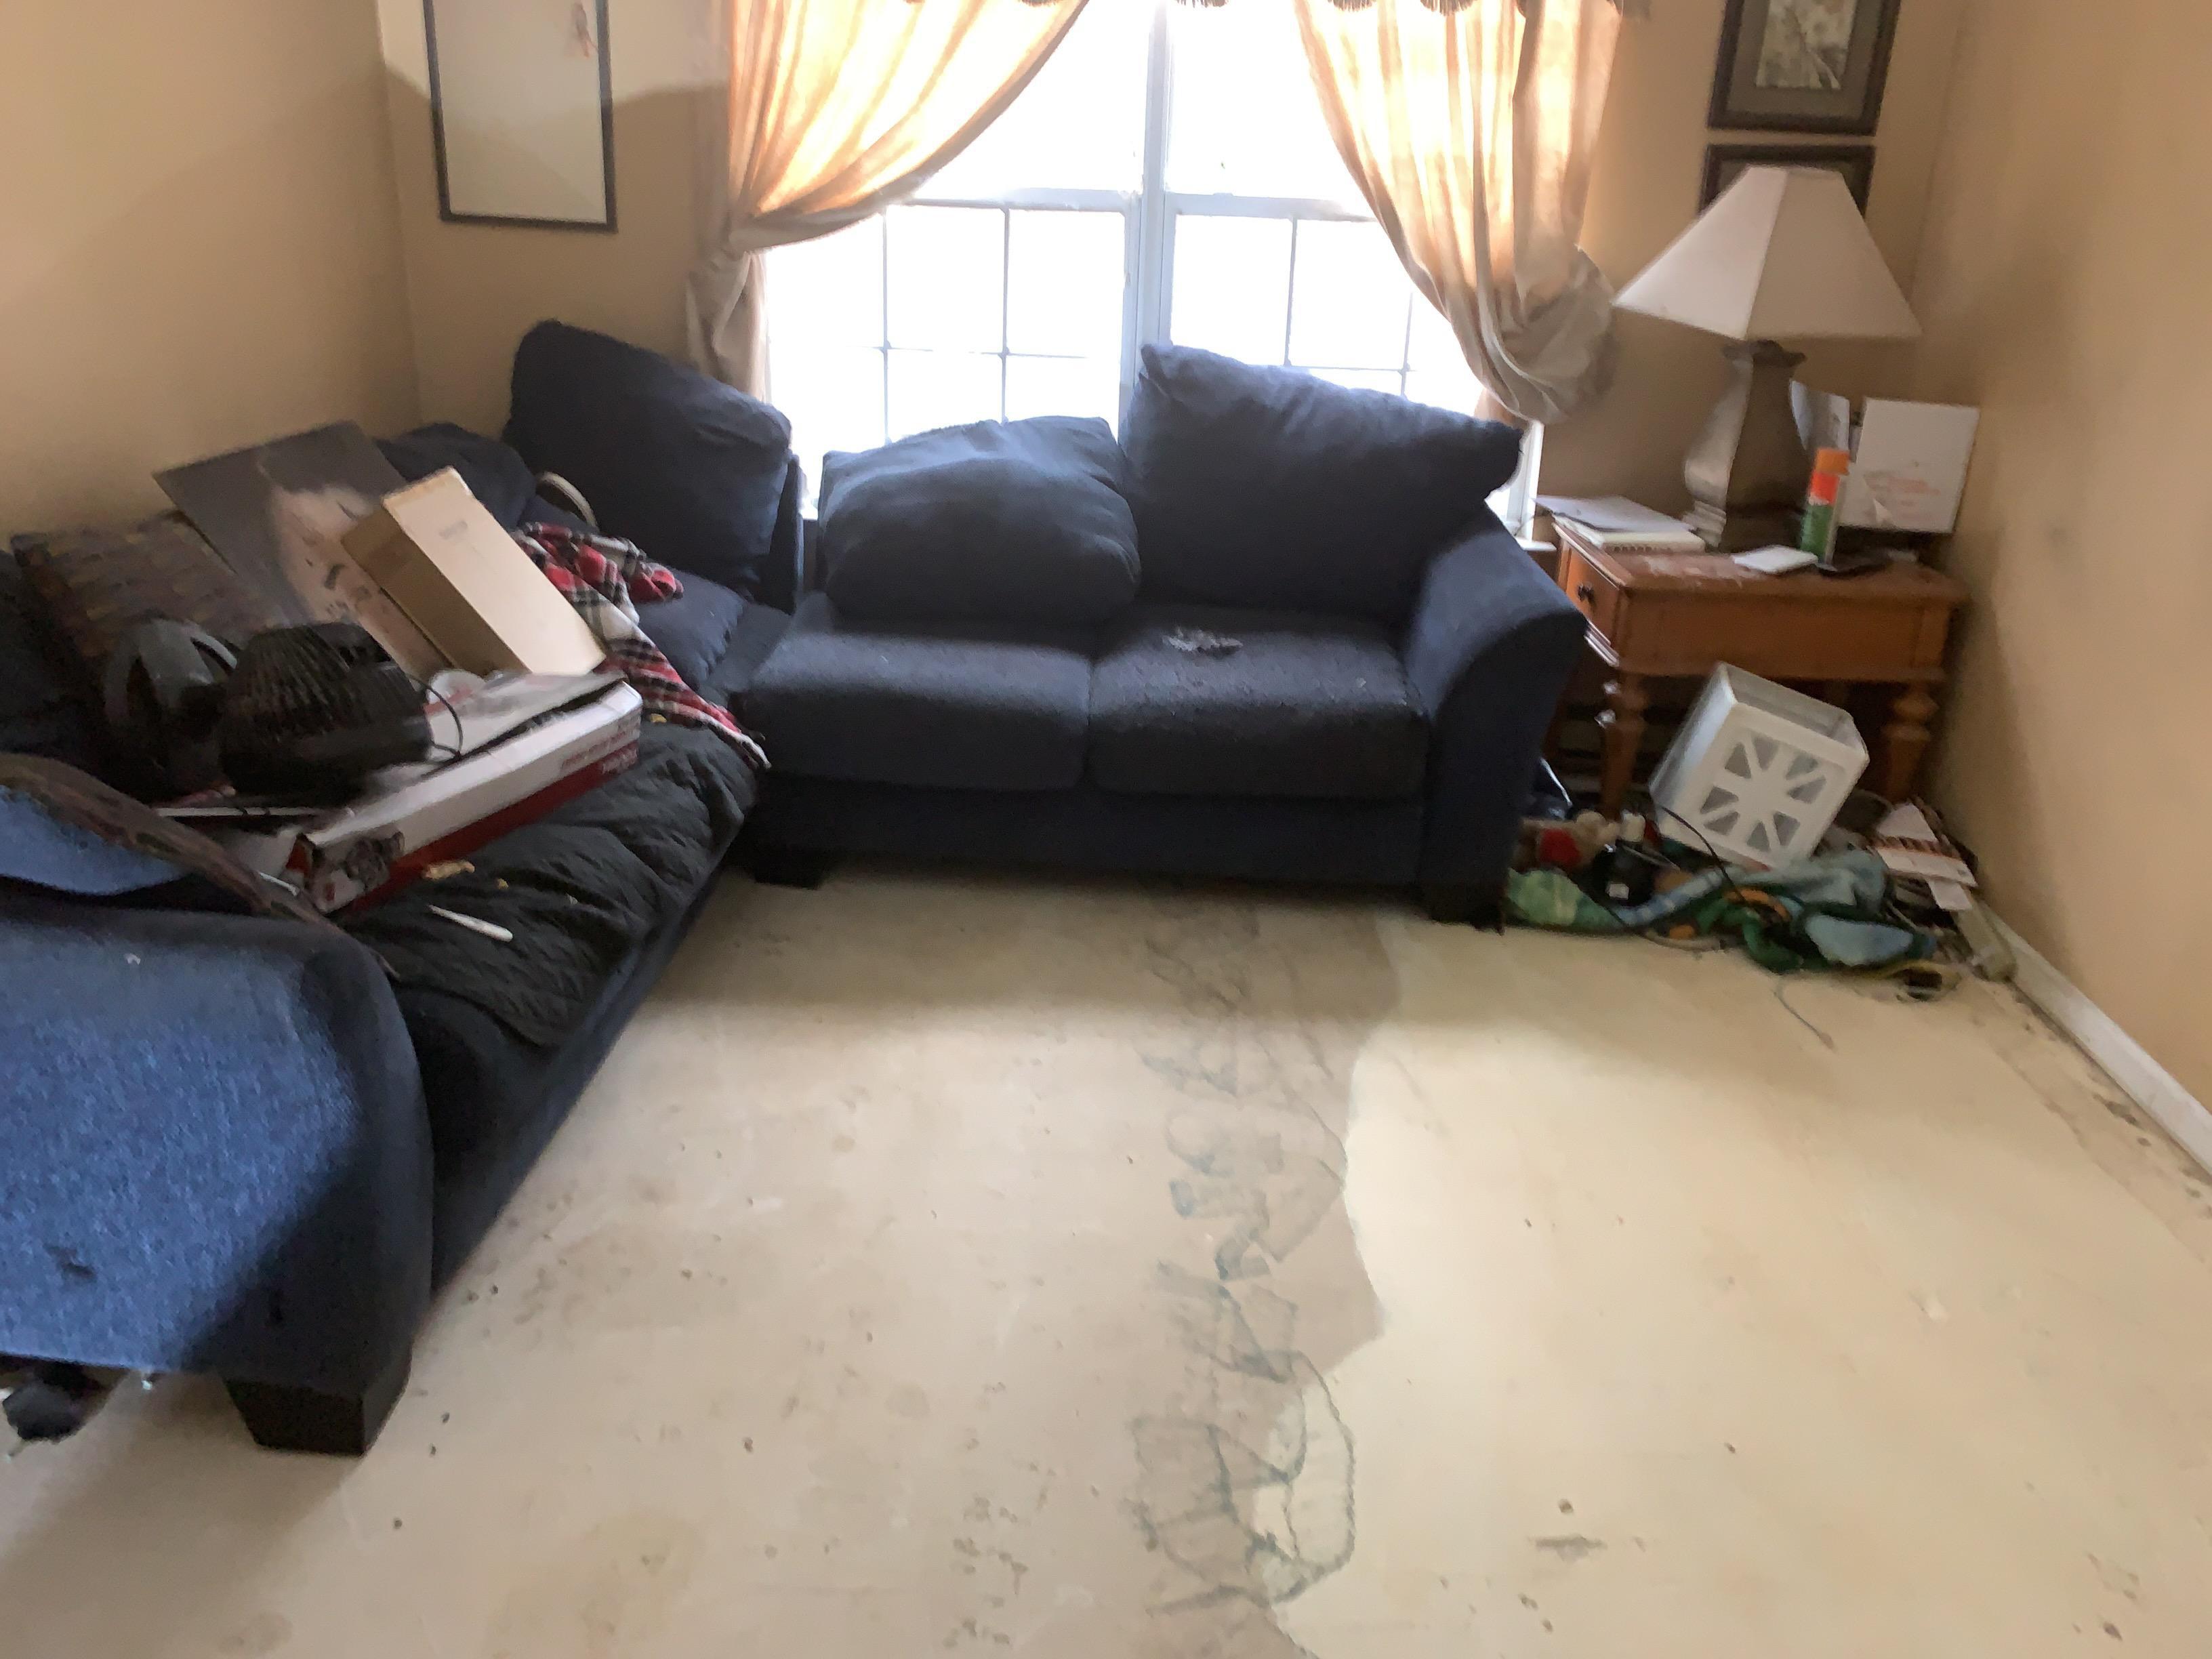 Living room damage